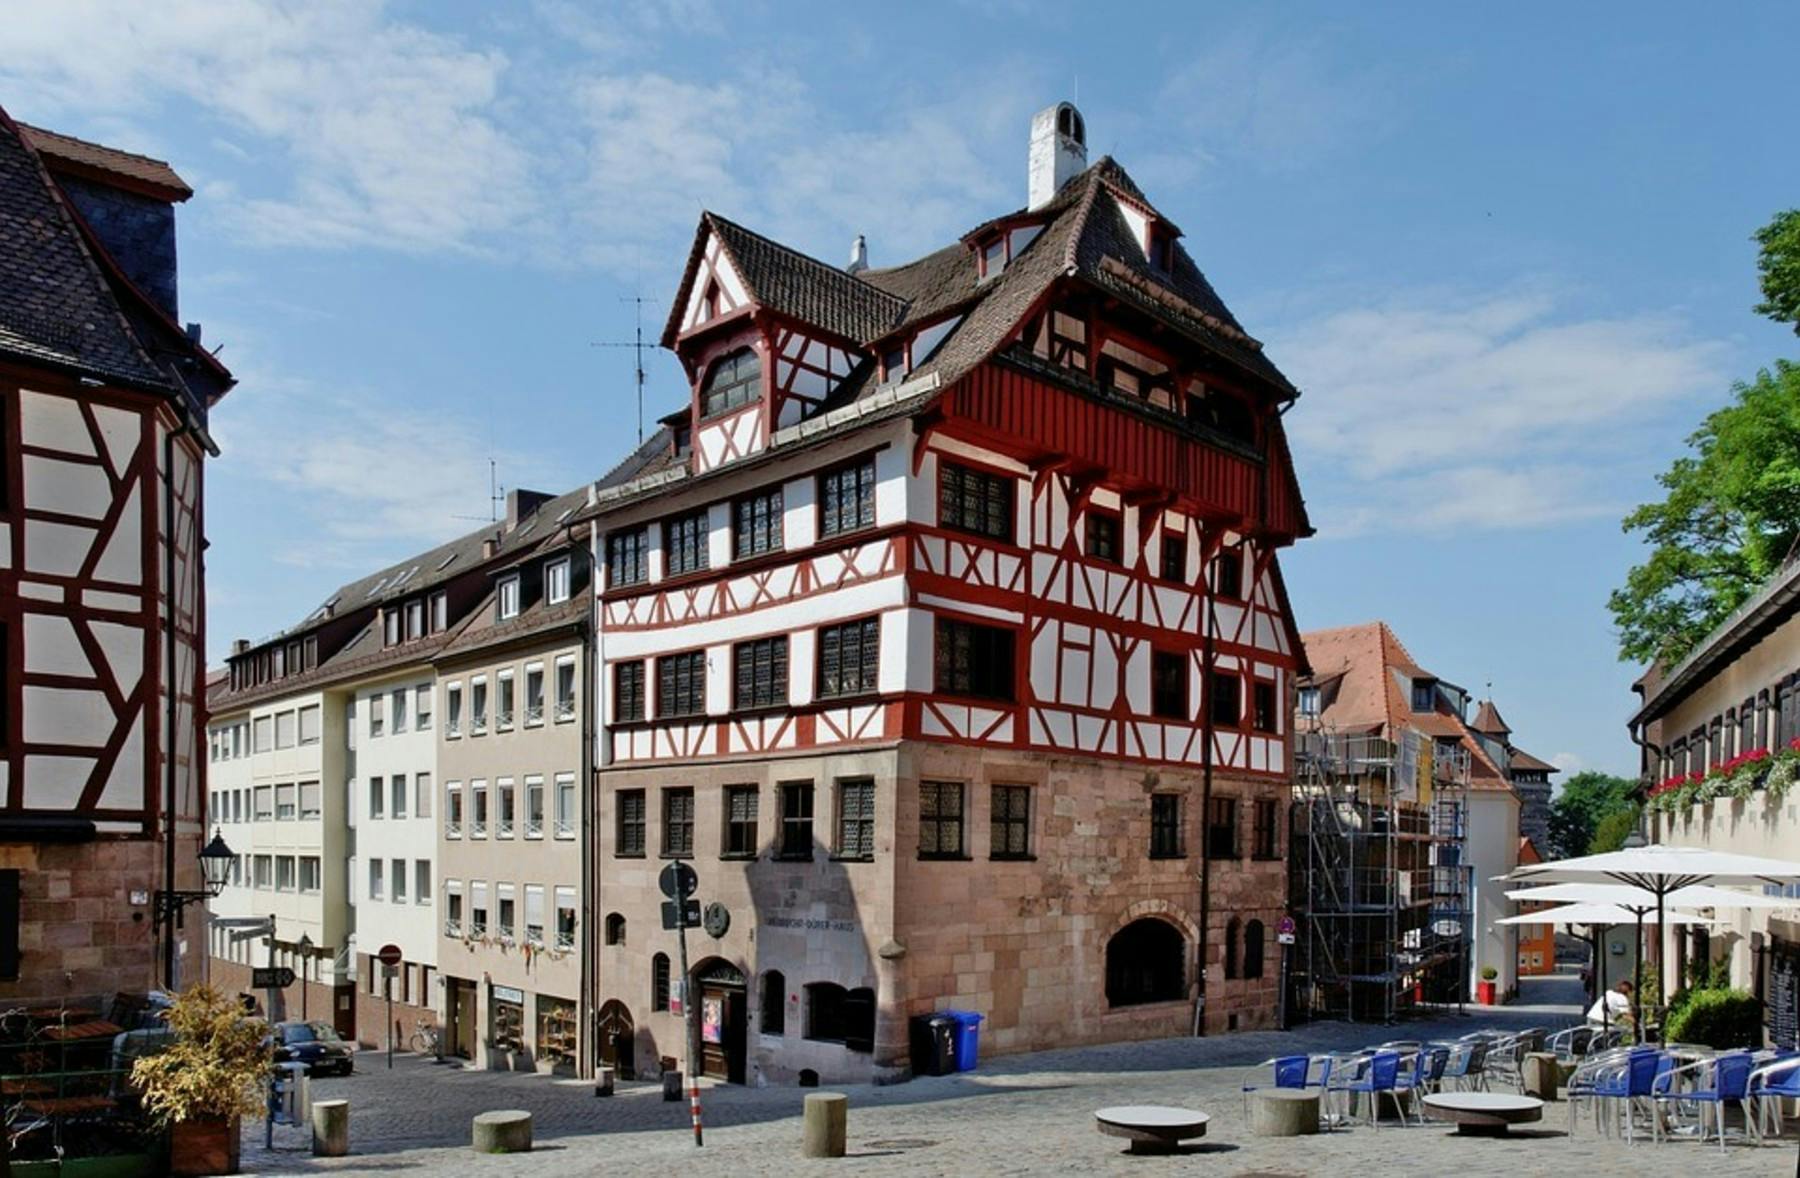 Sightseeings in Nuremberg: The Albrecht-DürerHouse